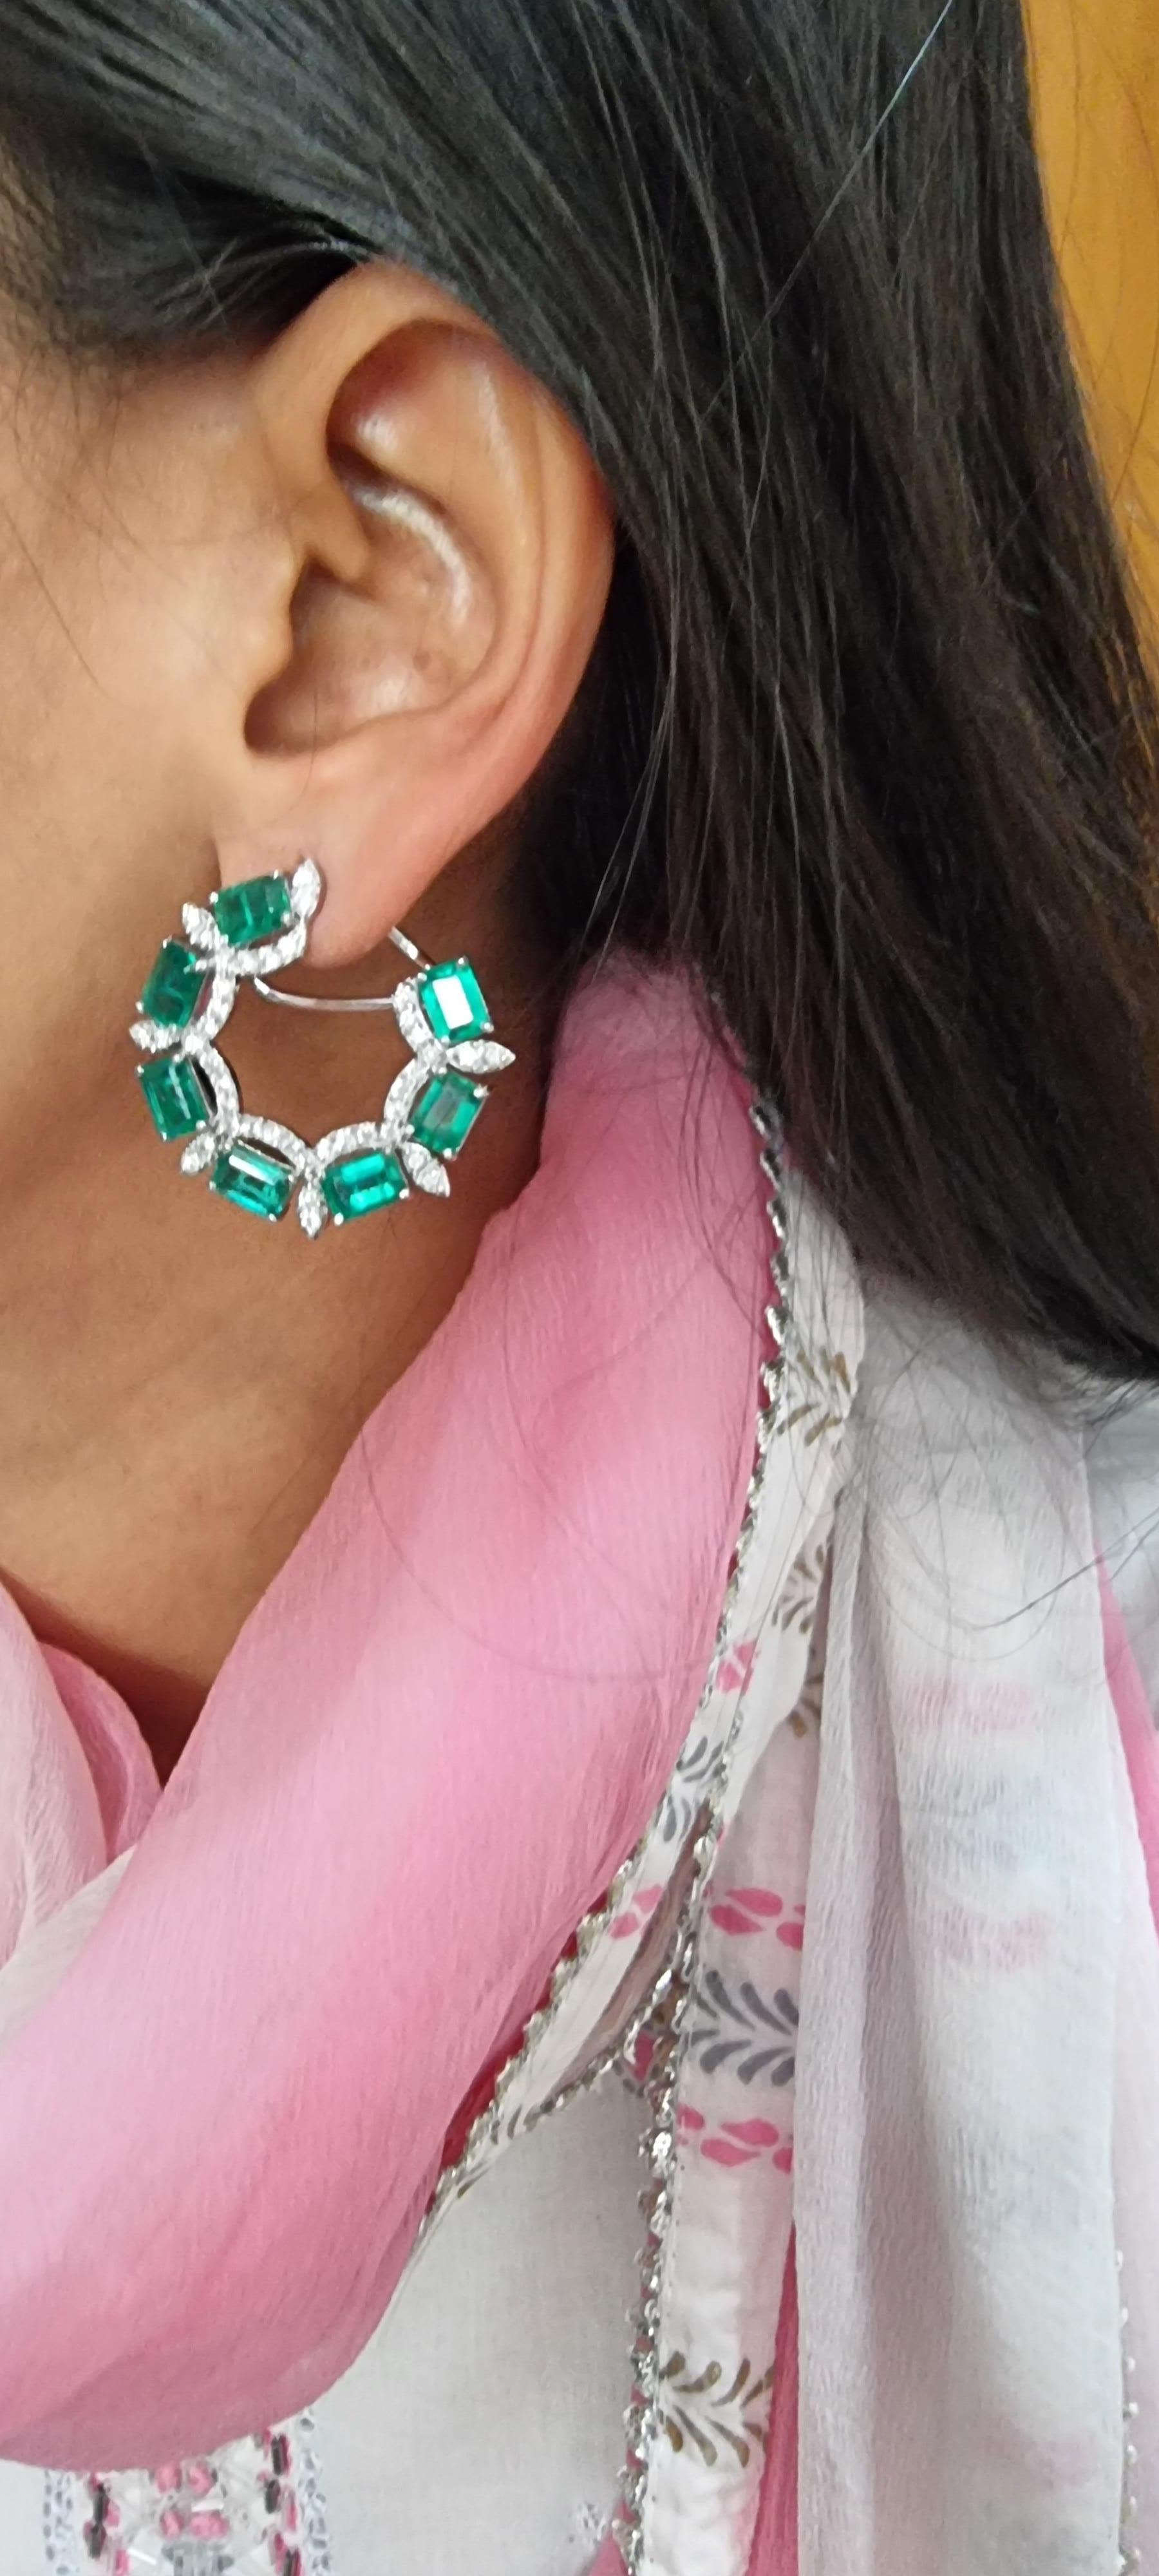 emerald earrings celebrities